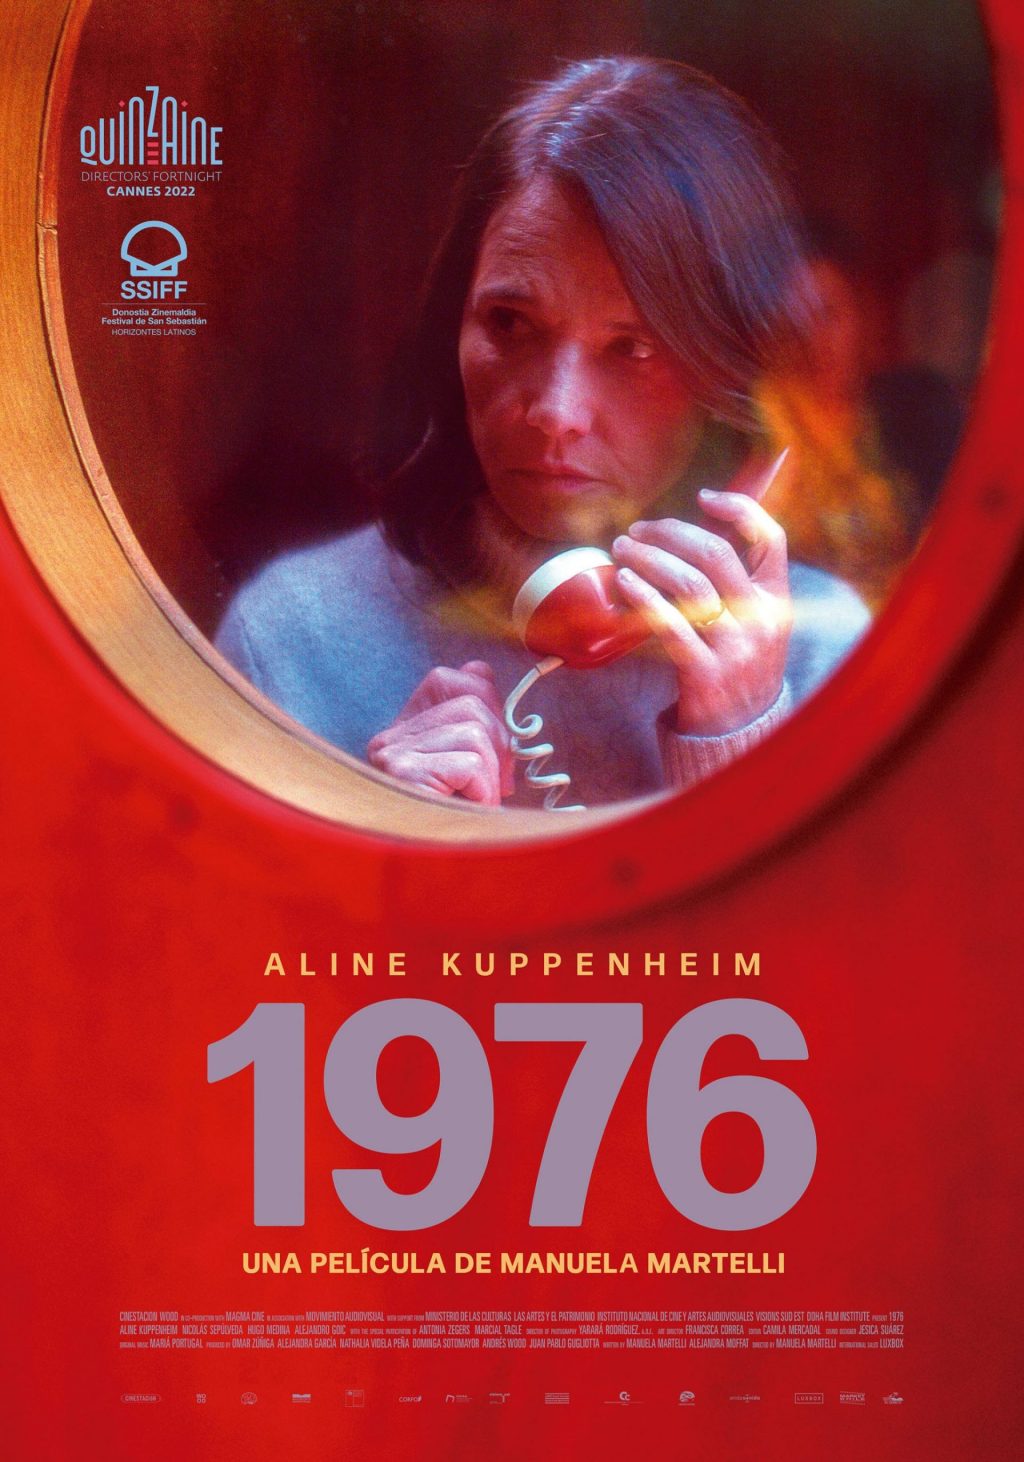 Reseña de “1976” de Manuela Martelli: Una Inmersión Profunda en la Película y sus Reflexiones